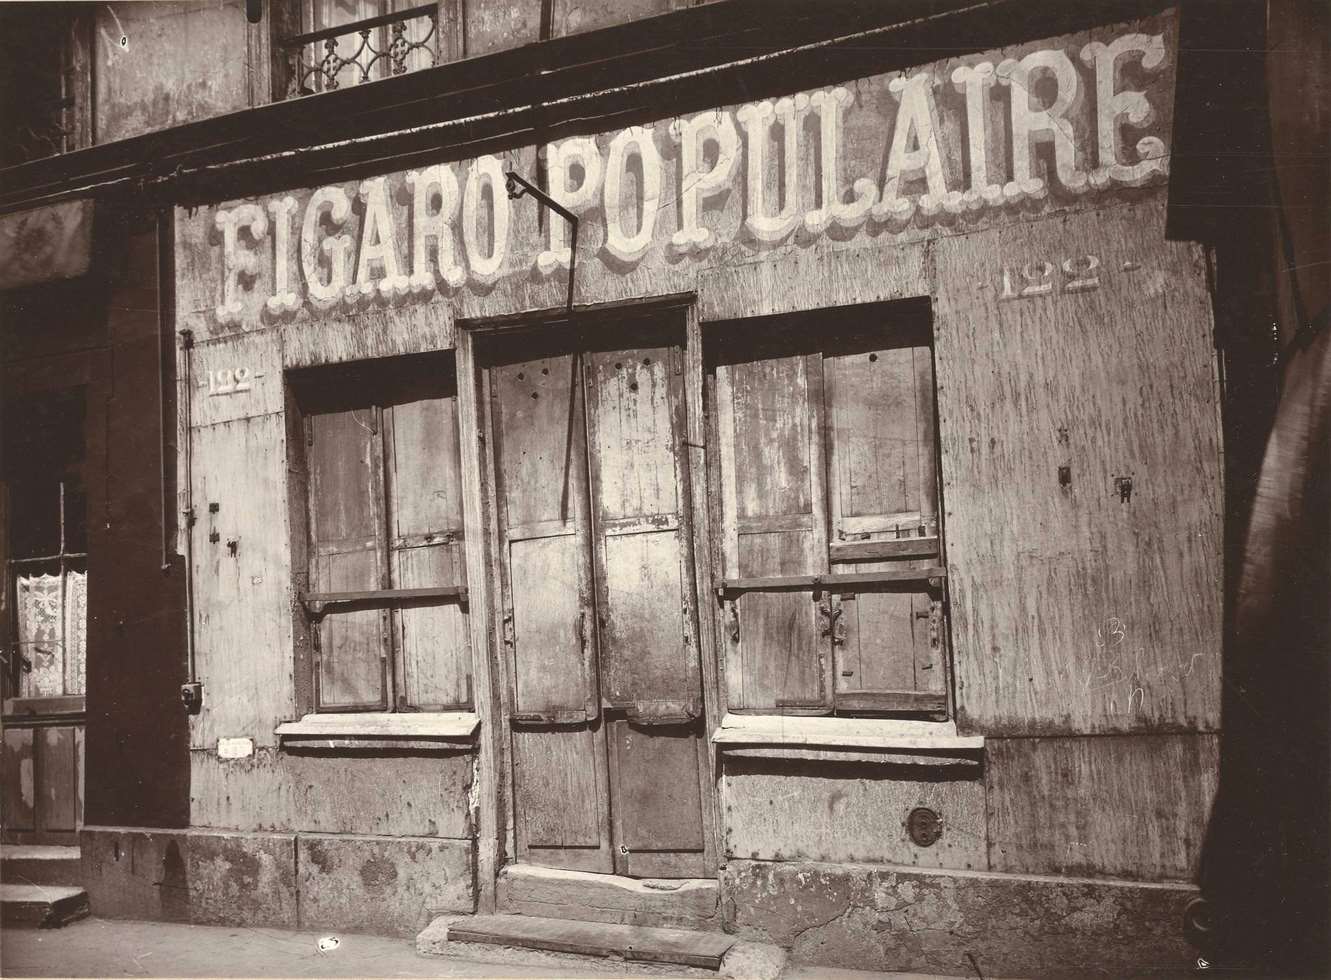 Le Figaro populaire, 122 Boulevard de la Villette (Barbershop Facade, 122 Boulevard de la Villette), 1924